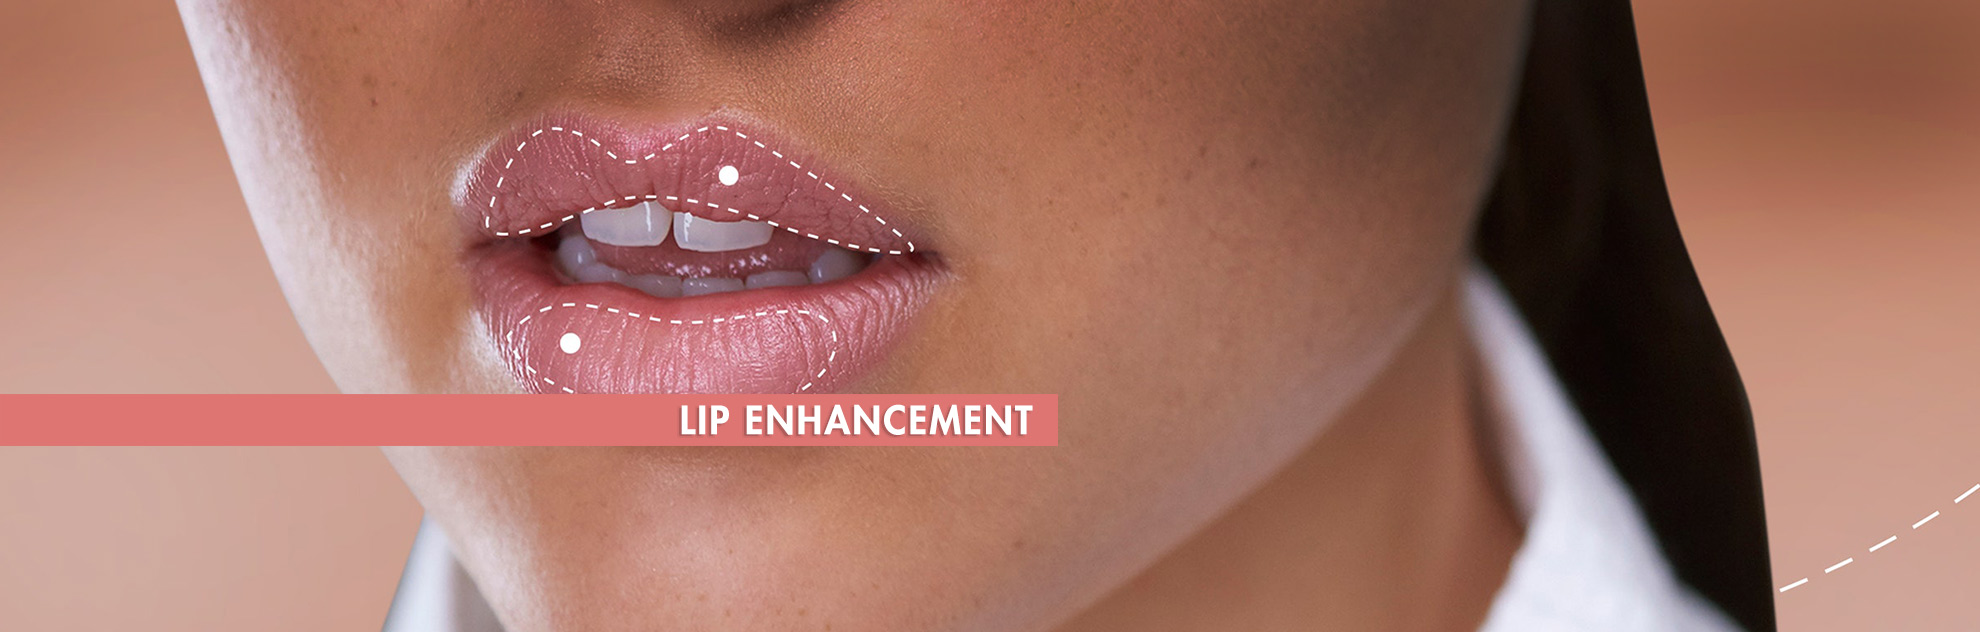 lip enhancement surgery hyderabad